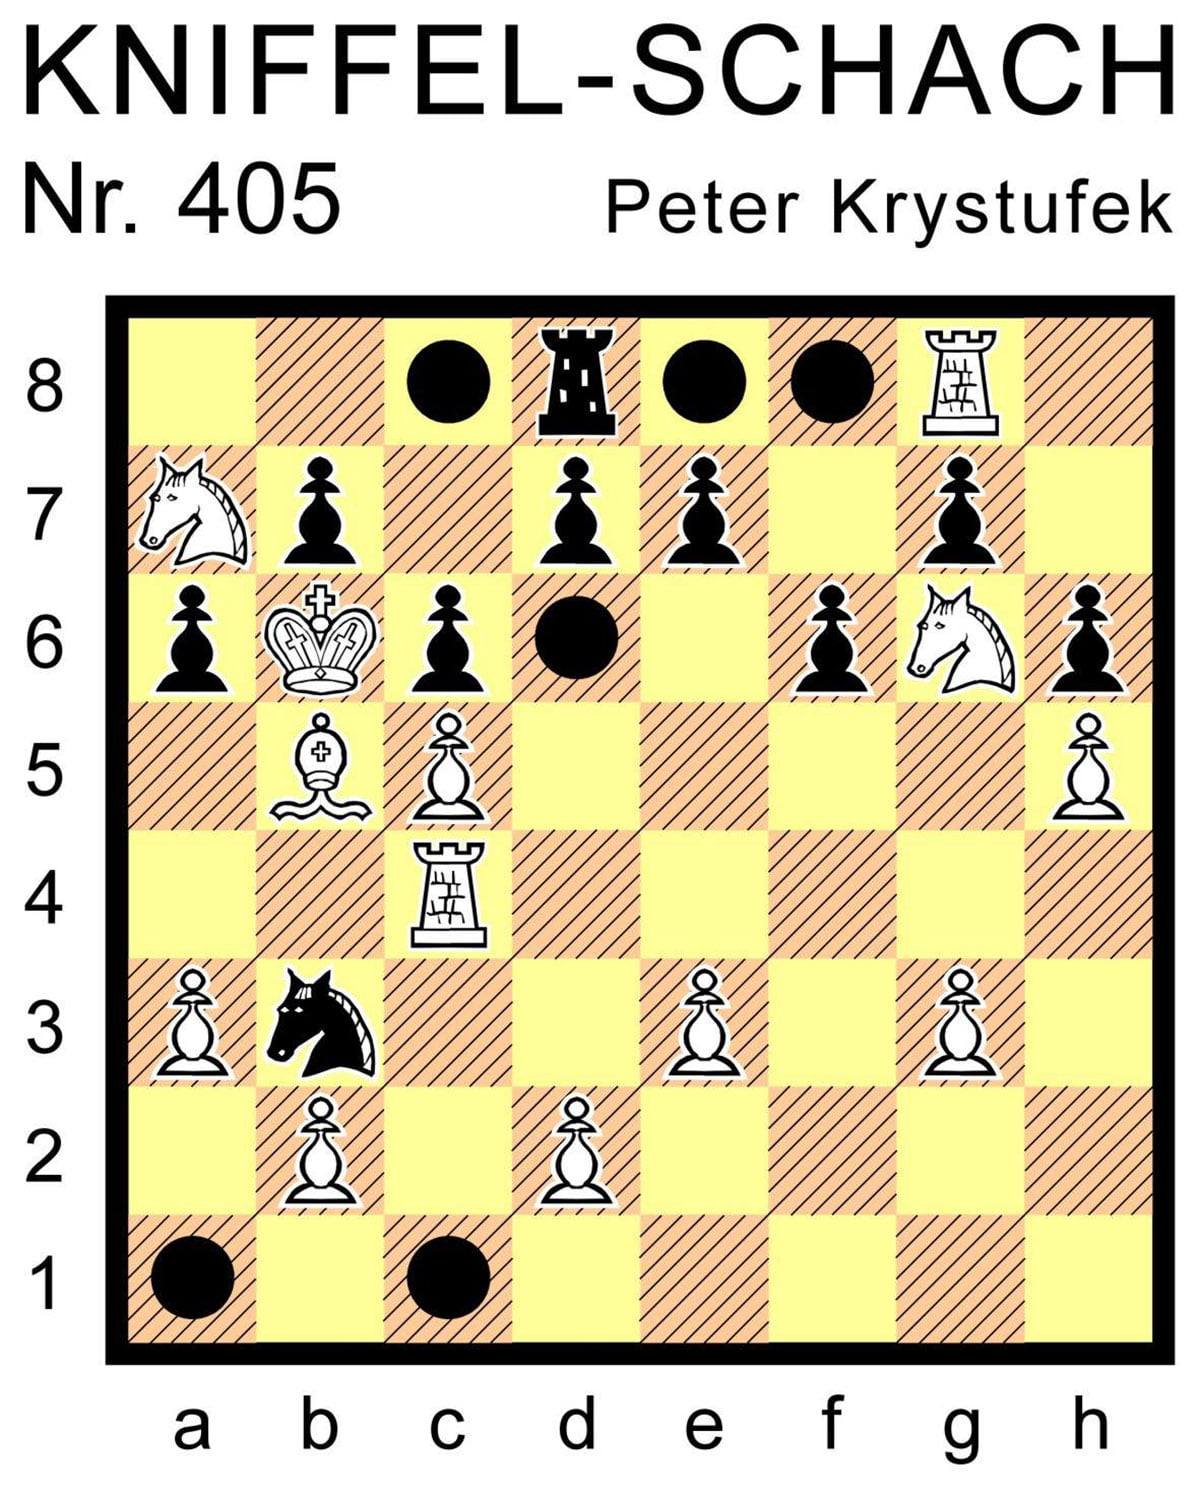 Kniffel-Schach Nr. 405